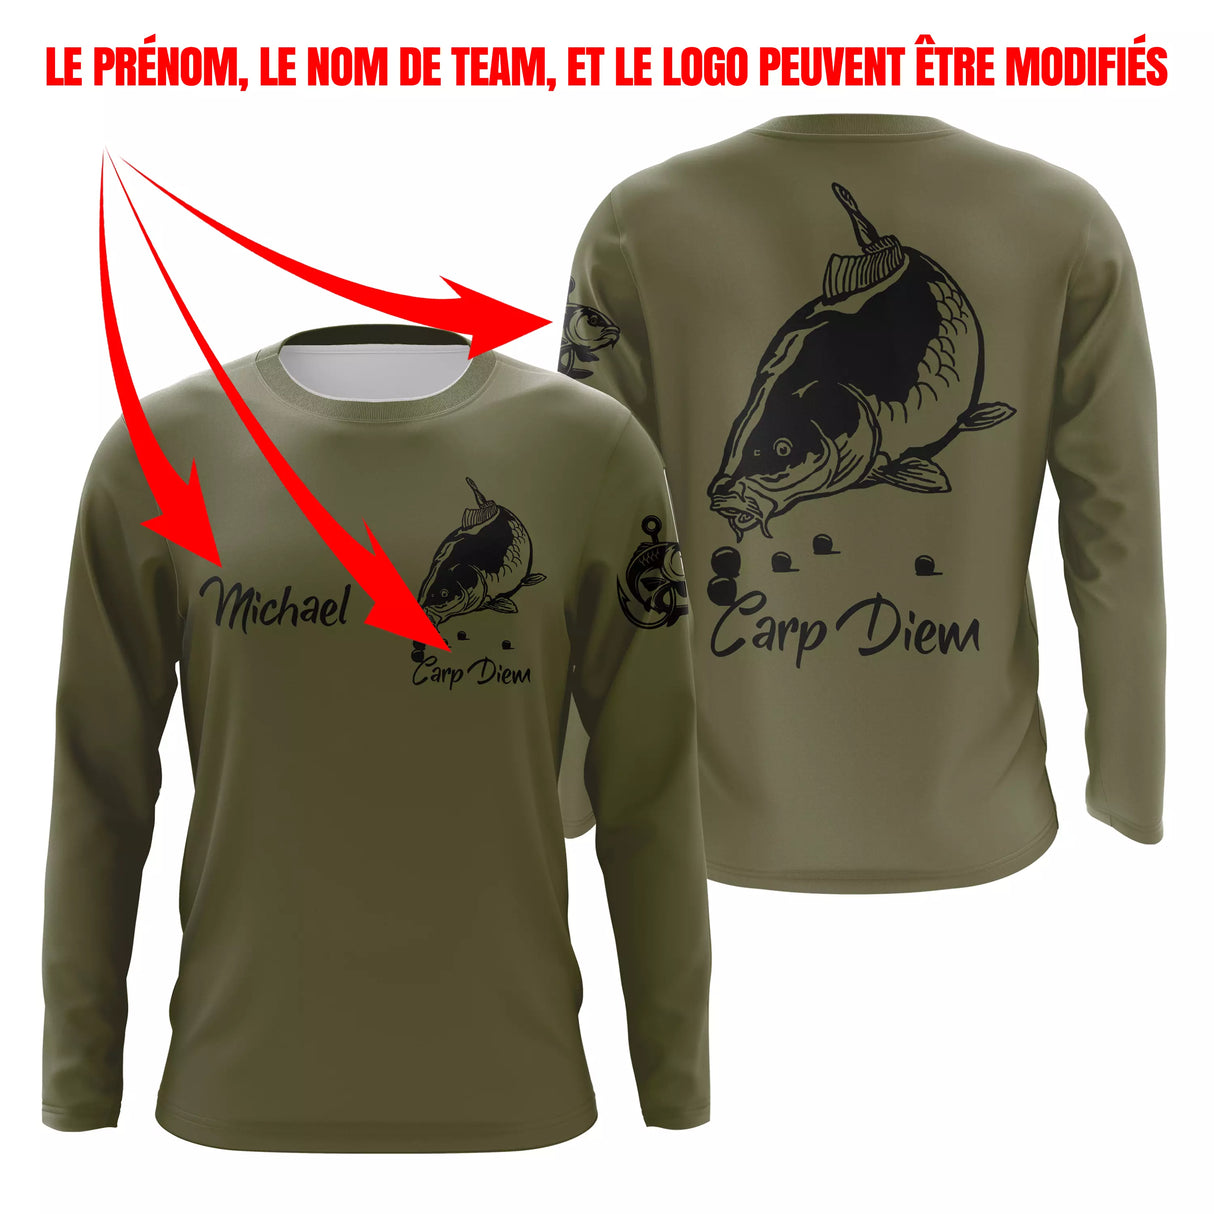 Chiptshirts T-shirt Pêche de la Carpe, Cadeau Original Pêcheur, Tee Shirt, Sweat à capuche, Vêtement Anti UV, Cadeau Personnalisé Pour La Pêche - CTS13042206